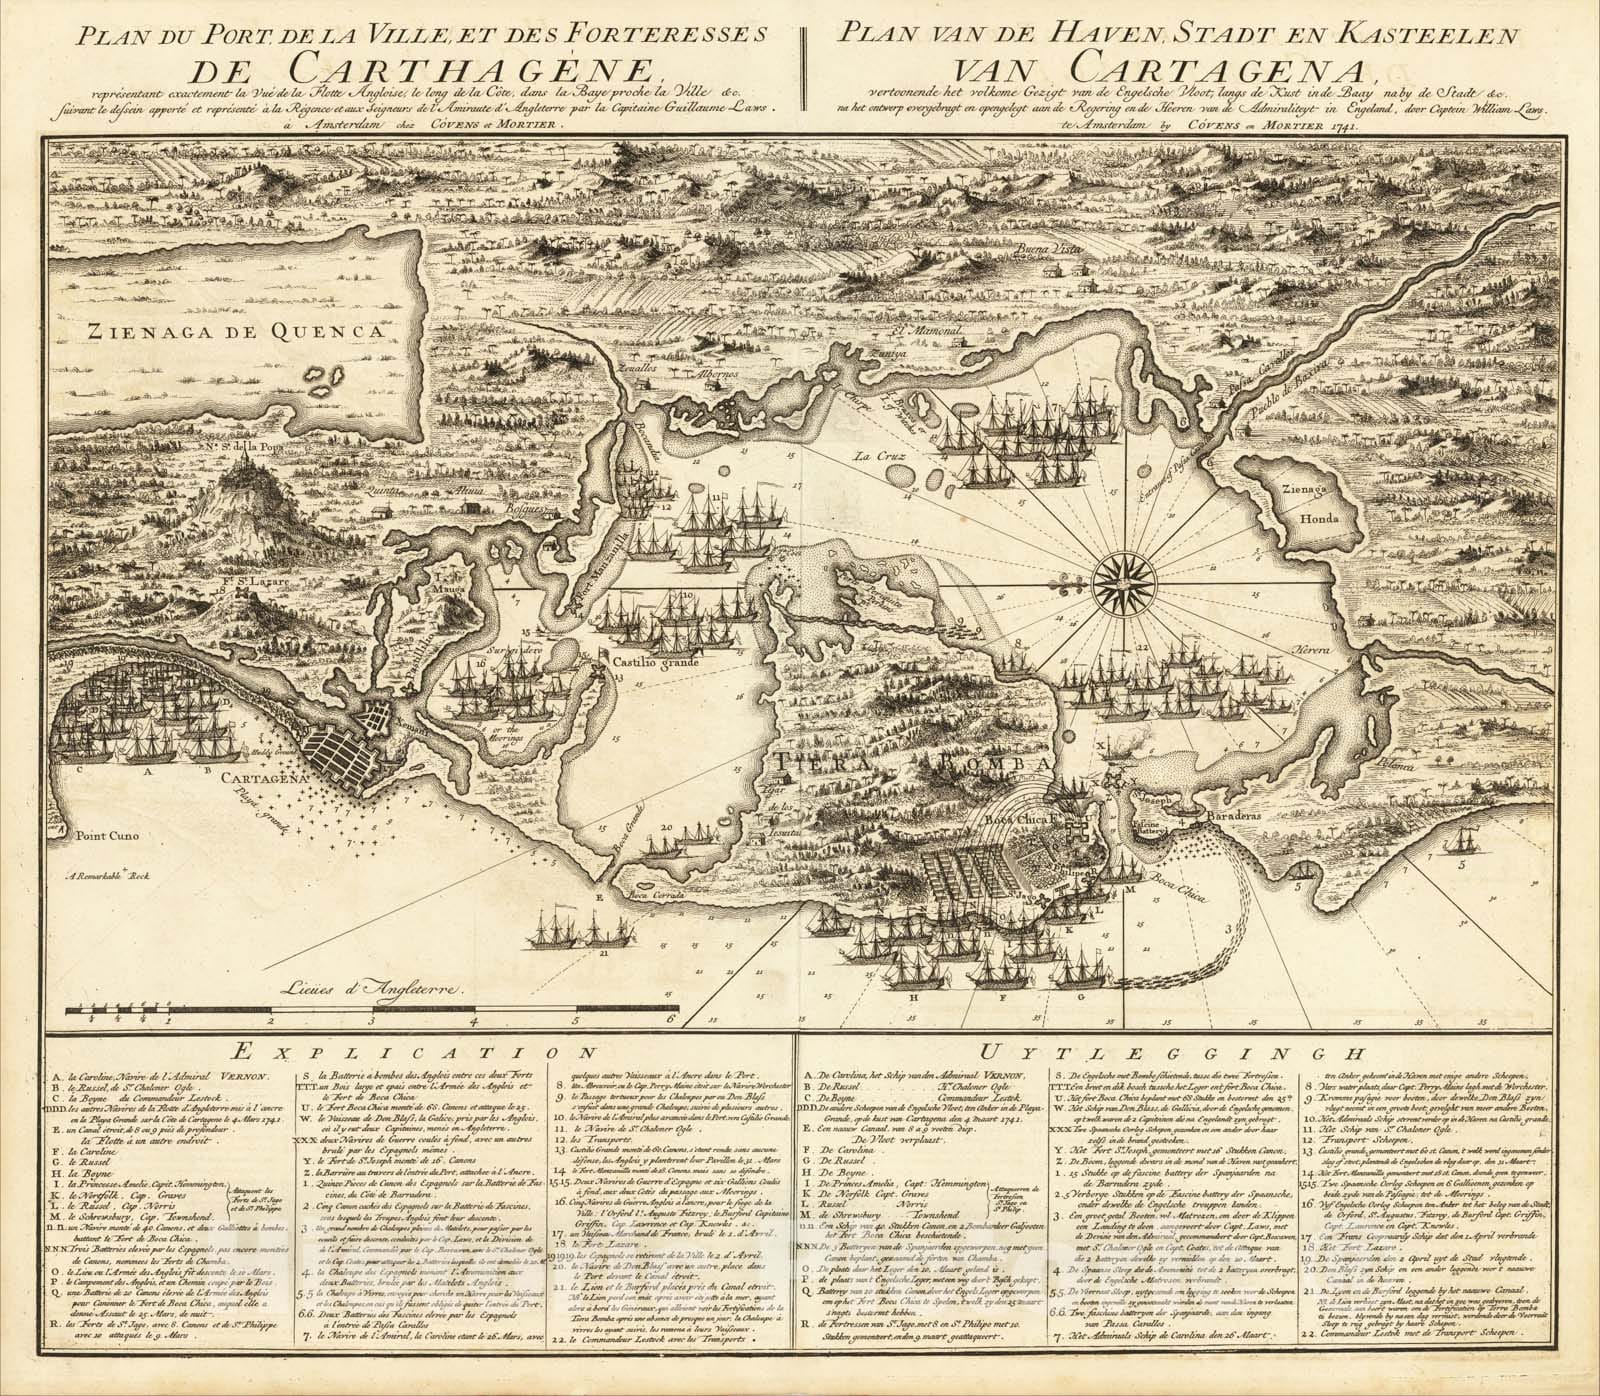 Historic Map : Plan du Port de la Ville, et des Forteresses de Carthagene, Plan van, Cartagena., 1741, Covens & Mortier, Vintage Wall Art